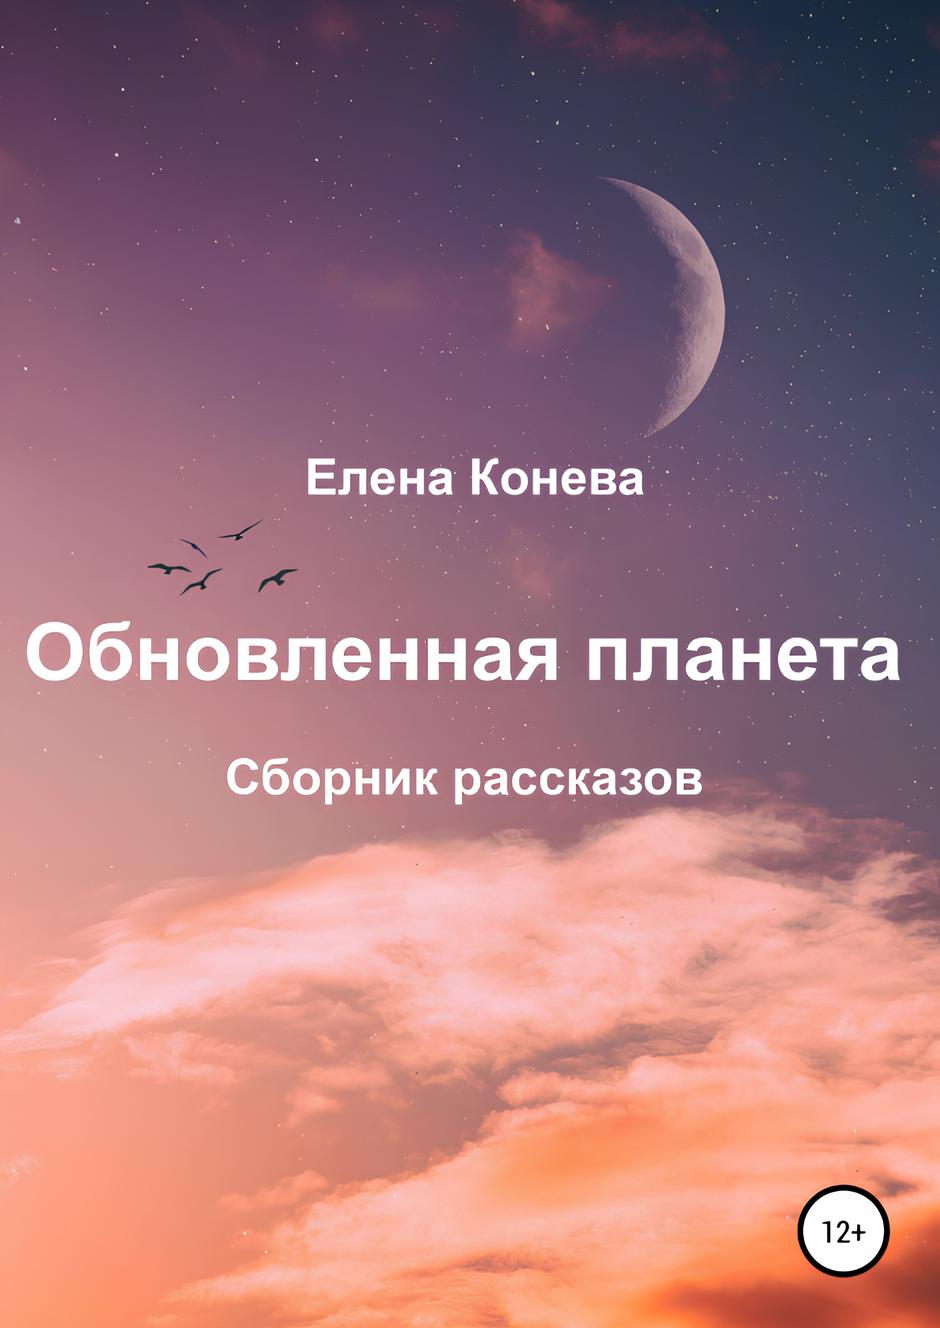 Купить книгу Обновленная планета. Сборник рассказов Конева Е. в интернет-магазине AgniBooks.ru